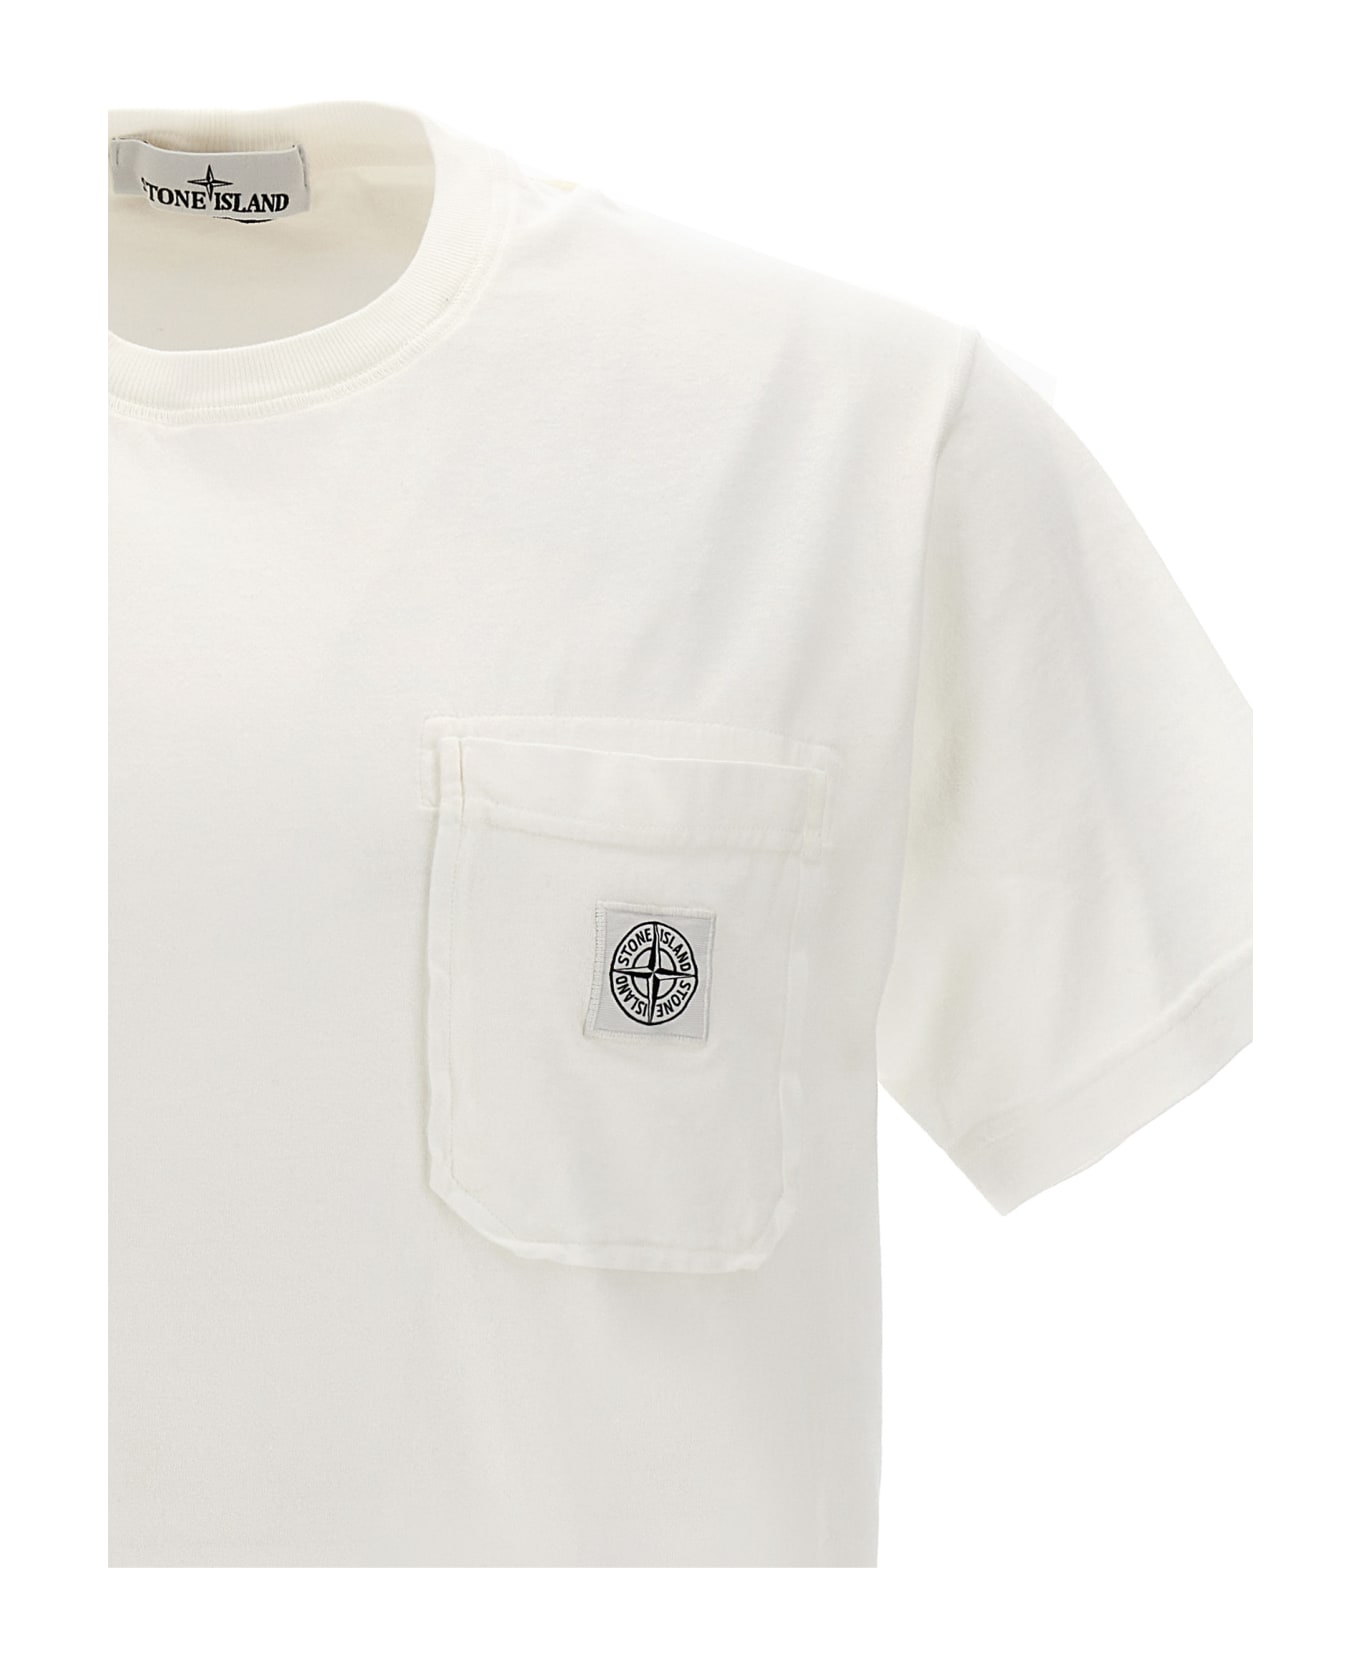 Stone Island T-shirt - White シャツ